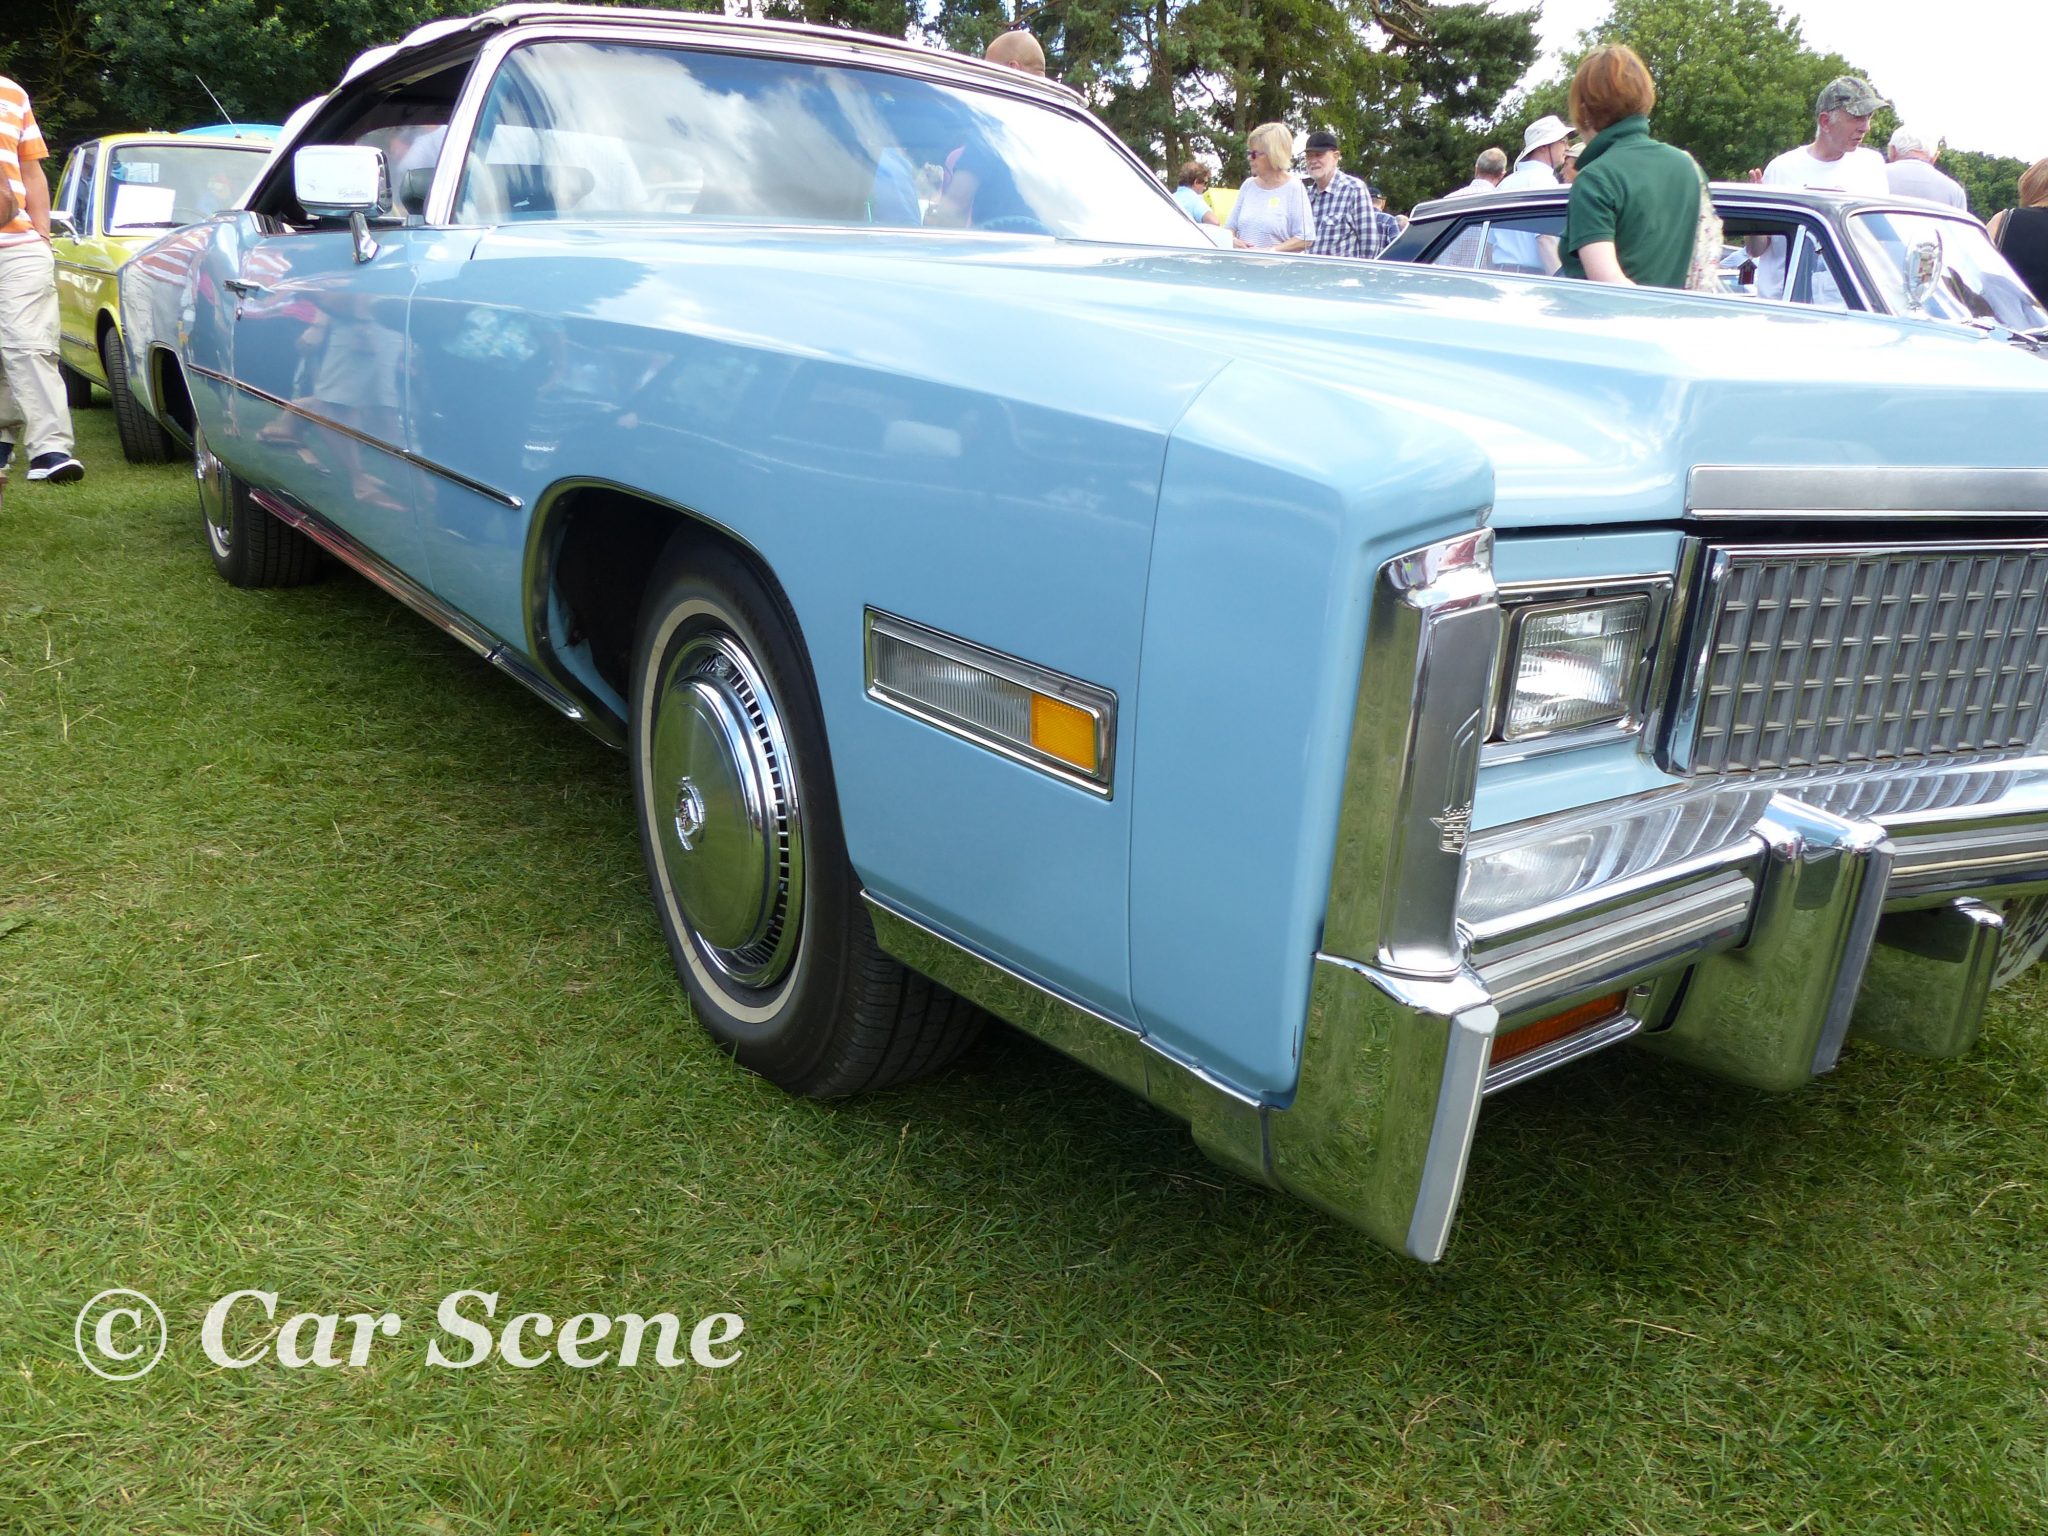 1975 Cadillac Eldorado front side view